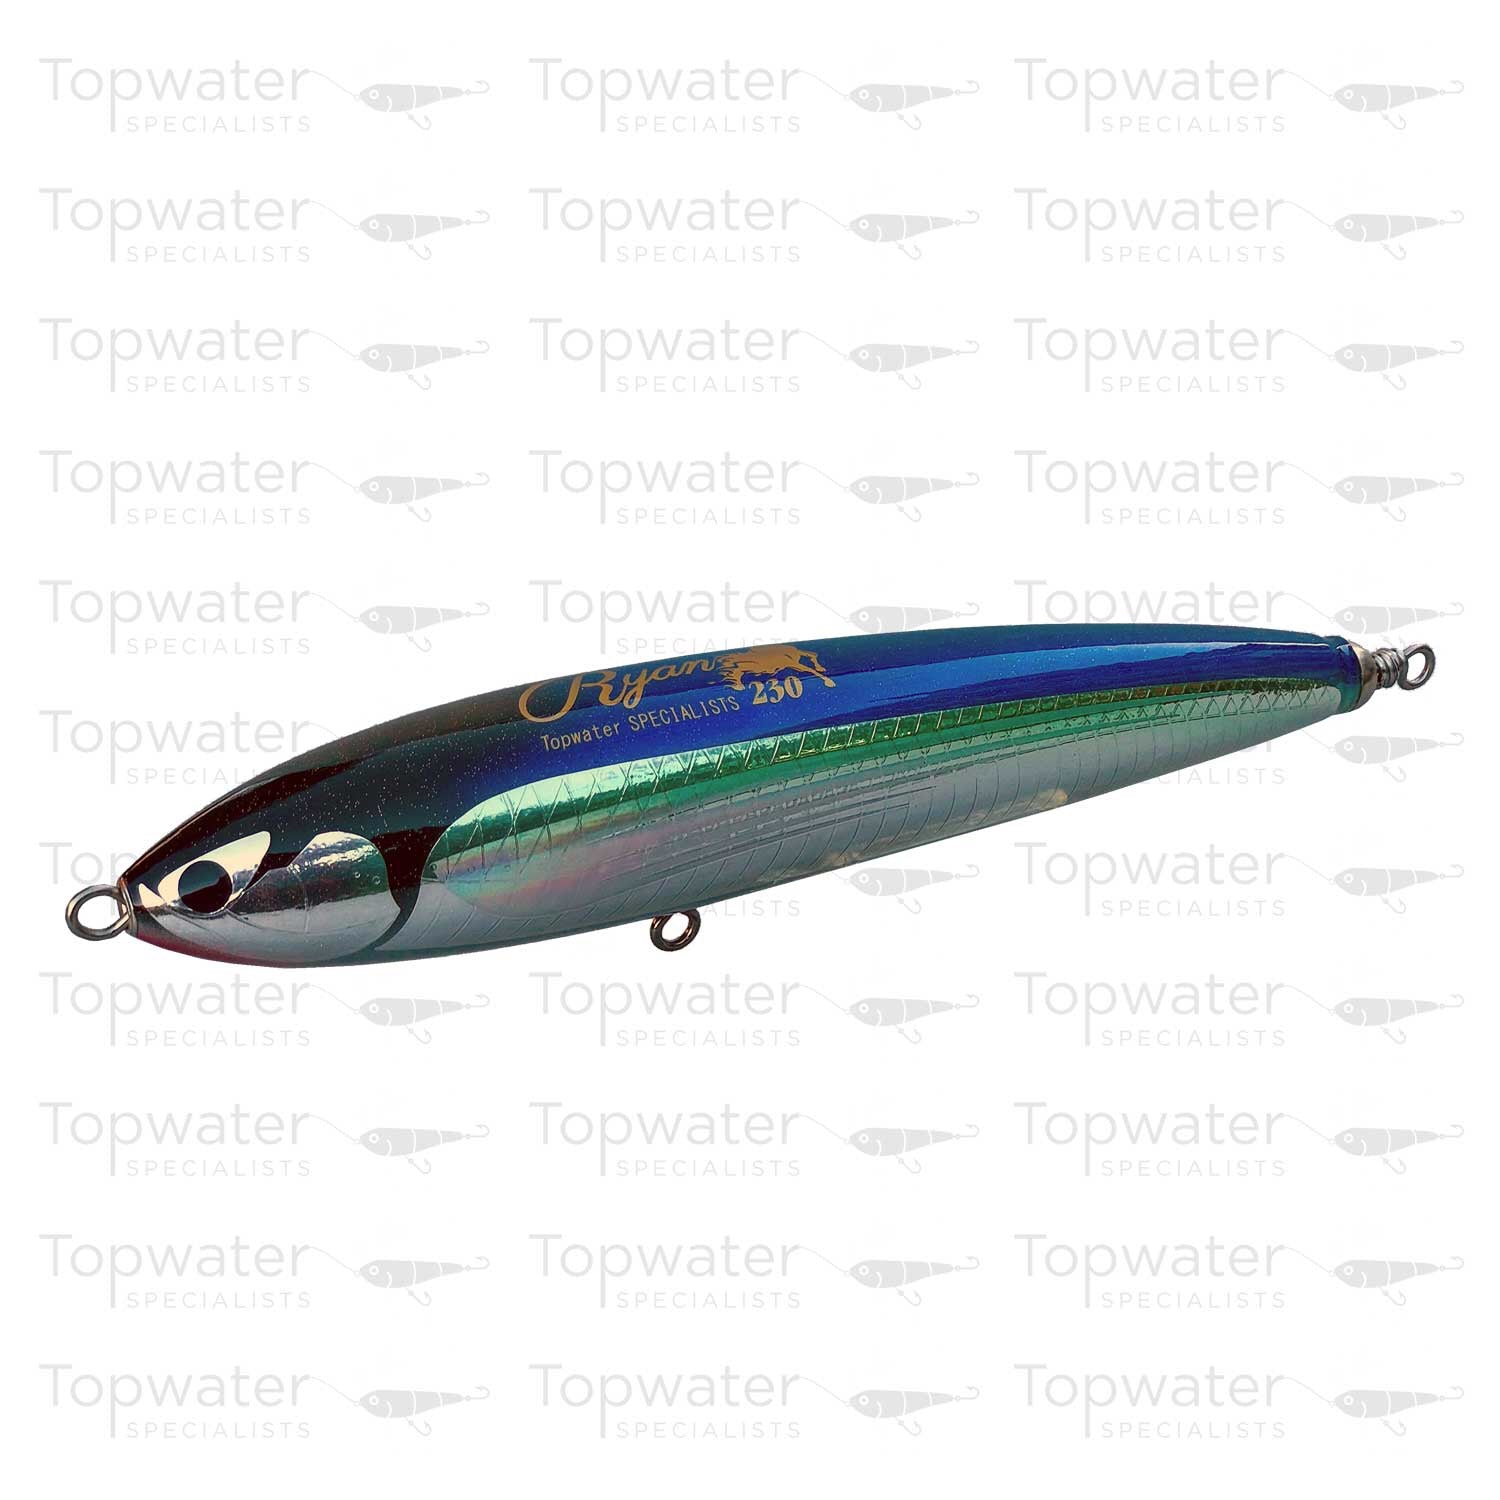 CB One X Topwater Specialists Ryan 230 Ltd